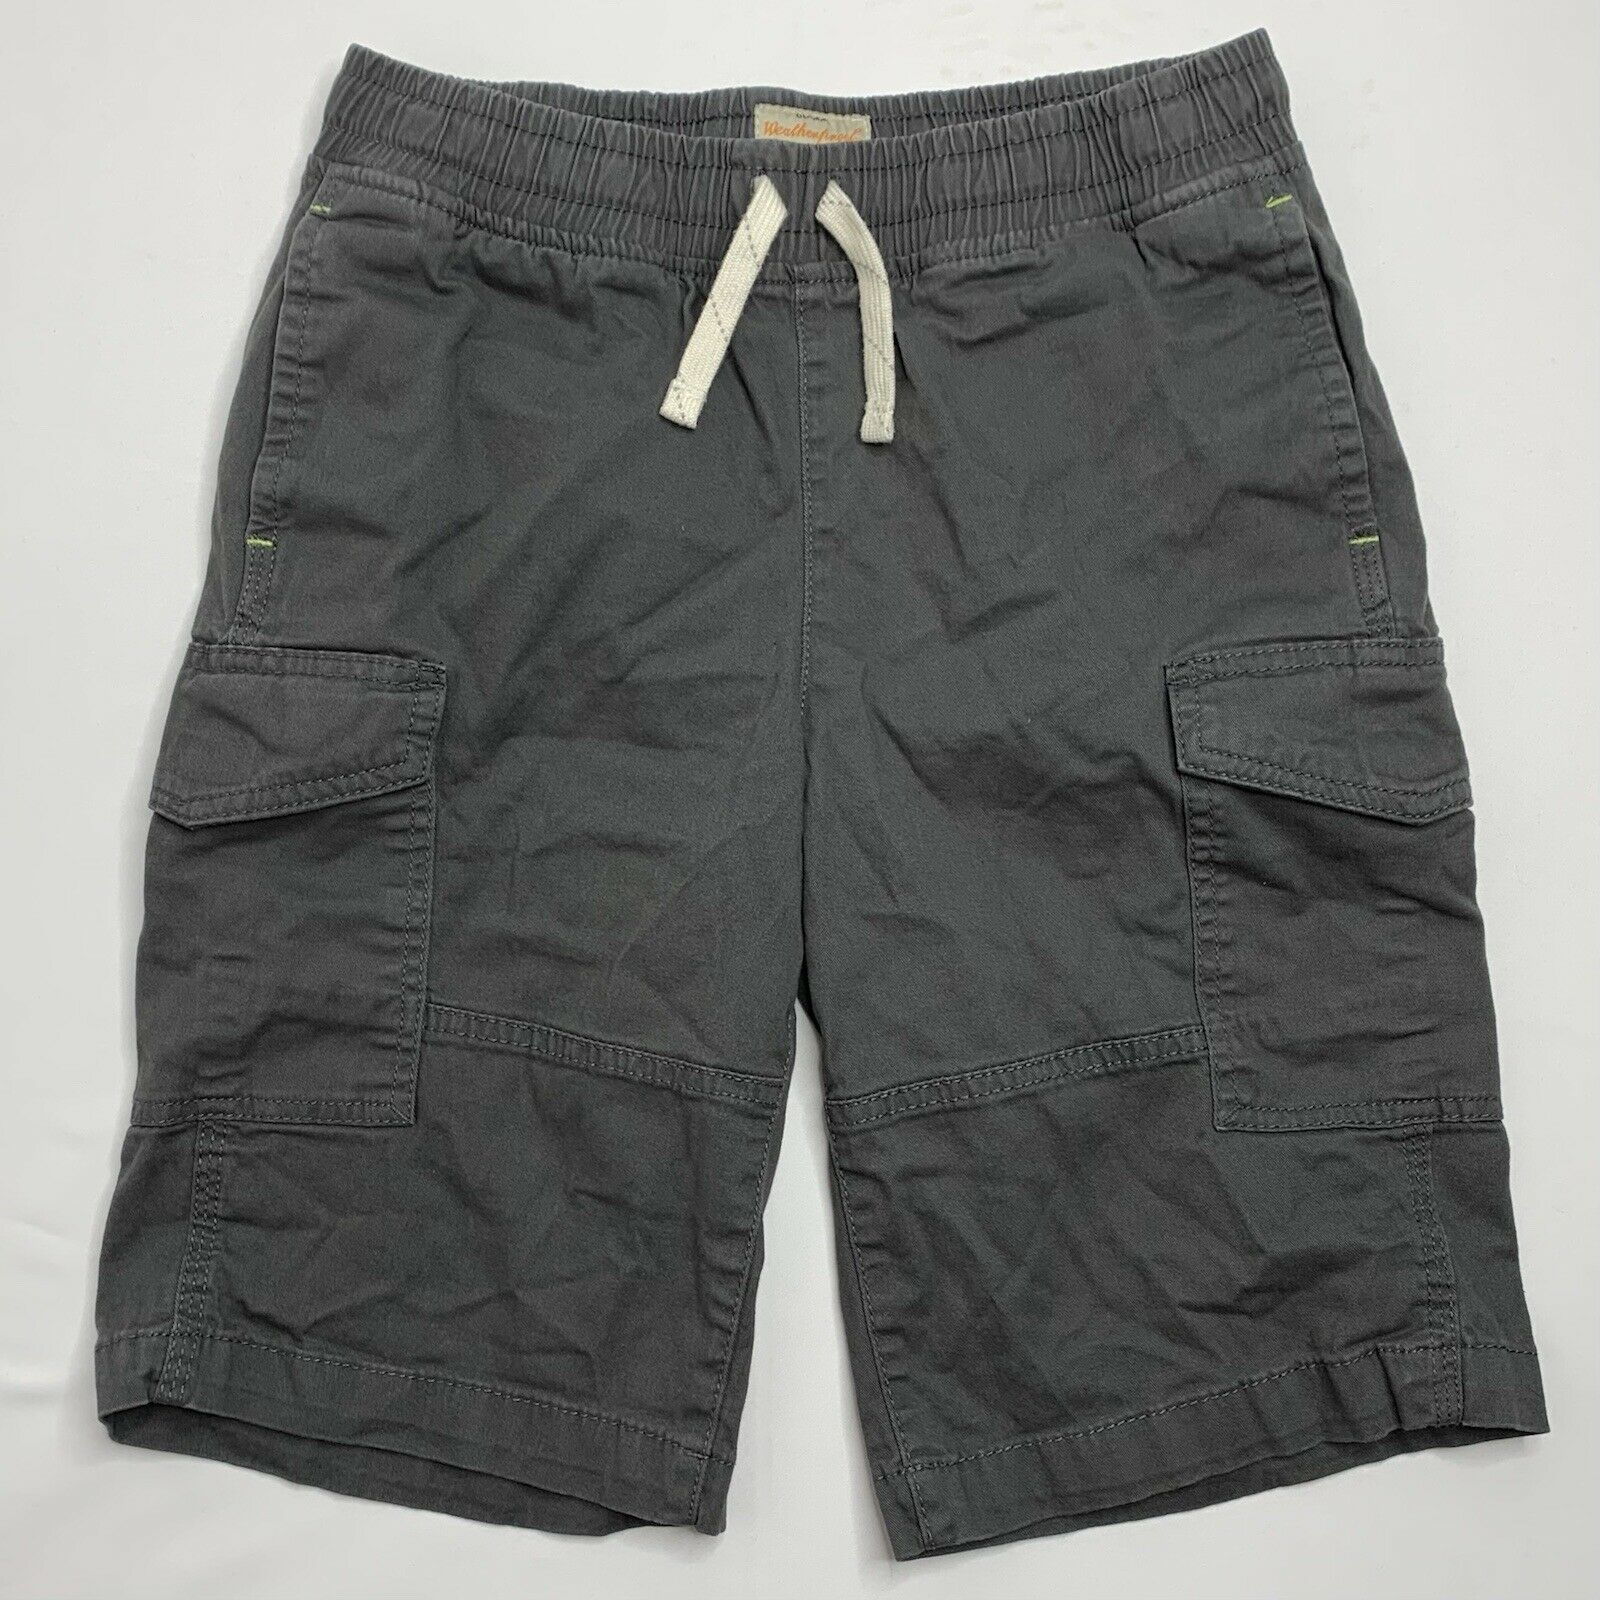 [youth] Weatherproof Vintage Size Medium (10-12) Gray Cargo Style Cotton Shorts